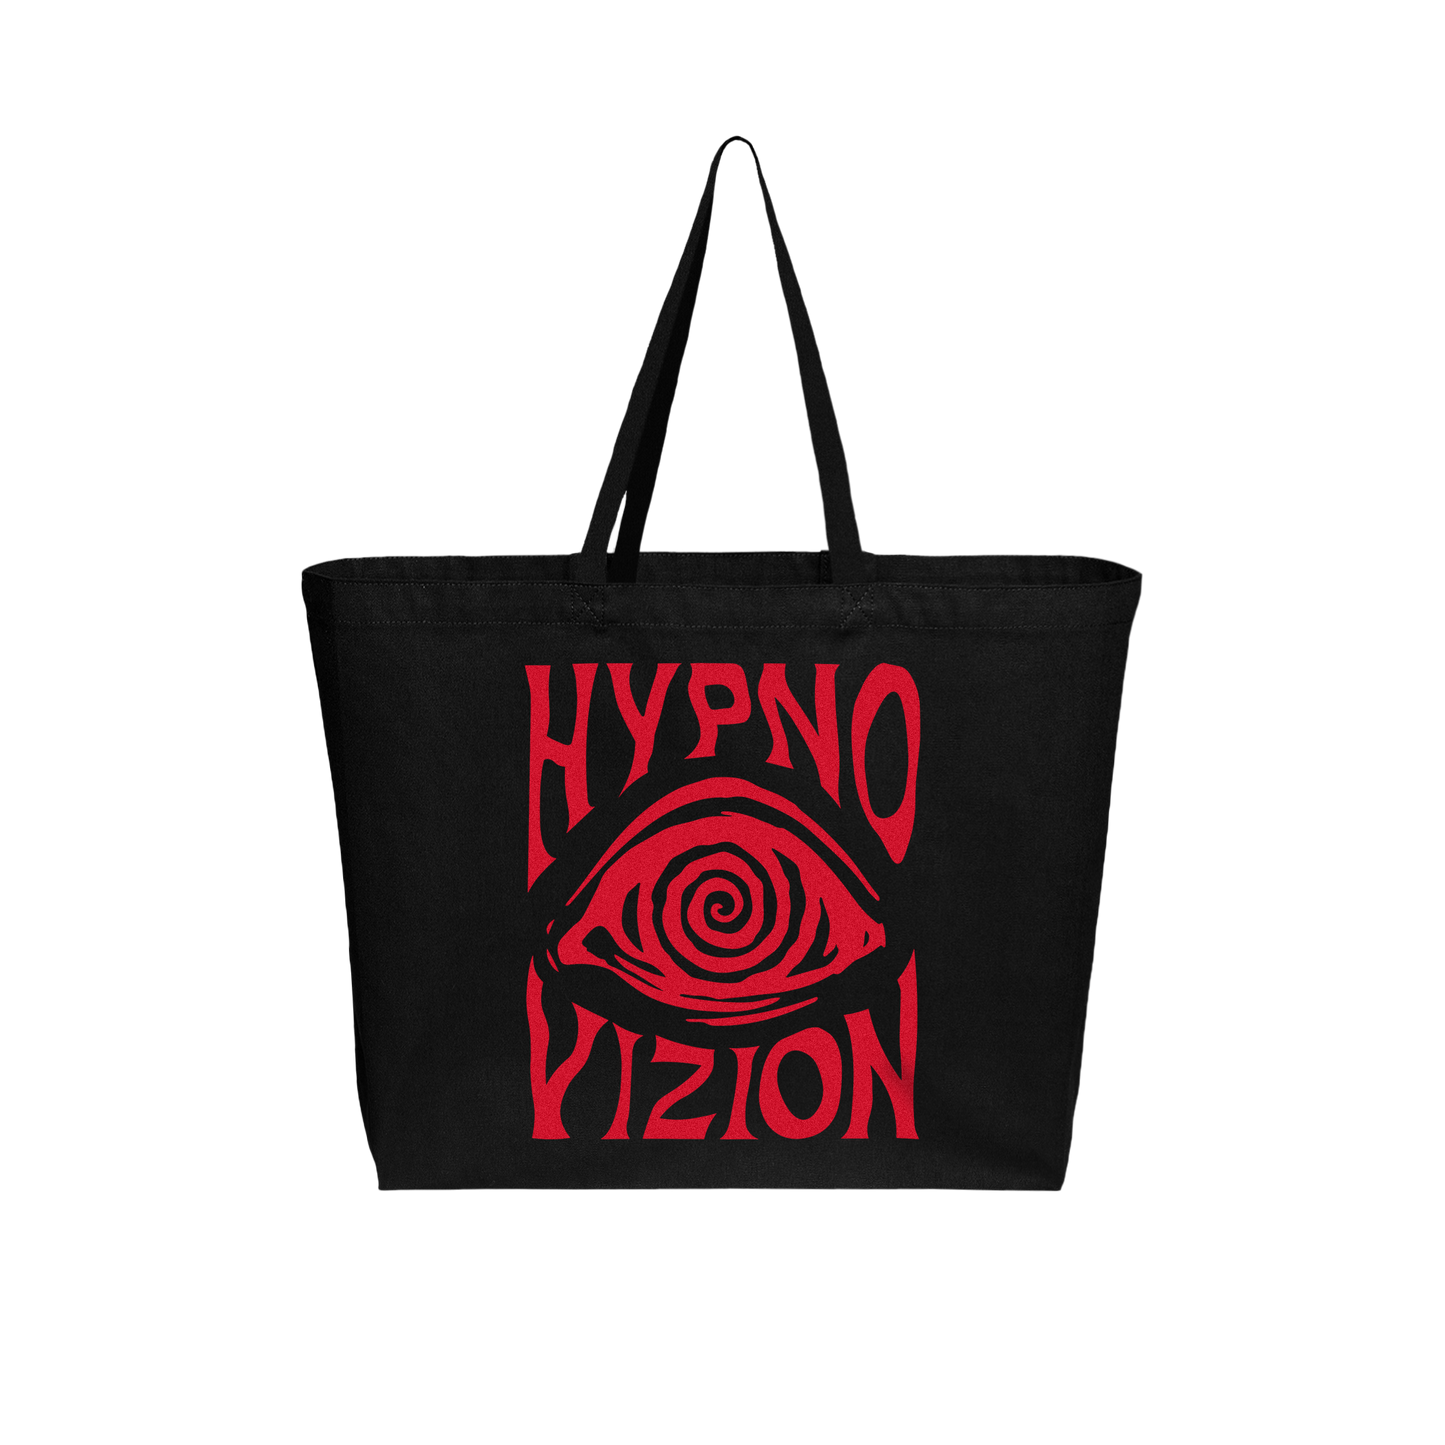 HypnoVizion - Hypno Tote Bag